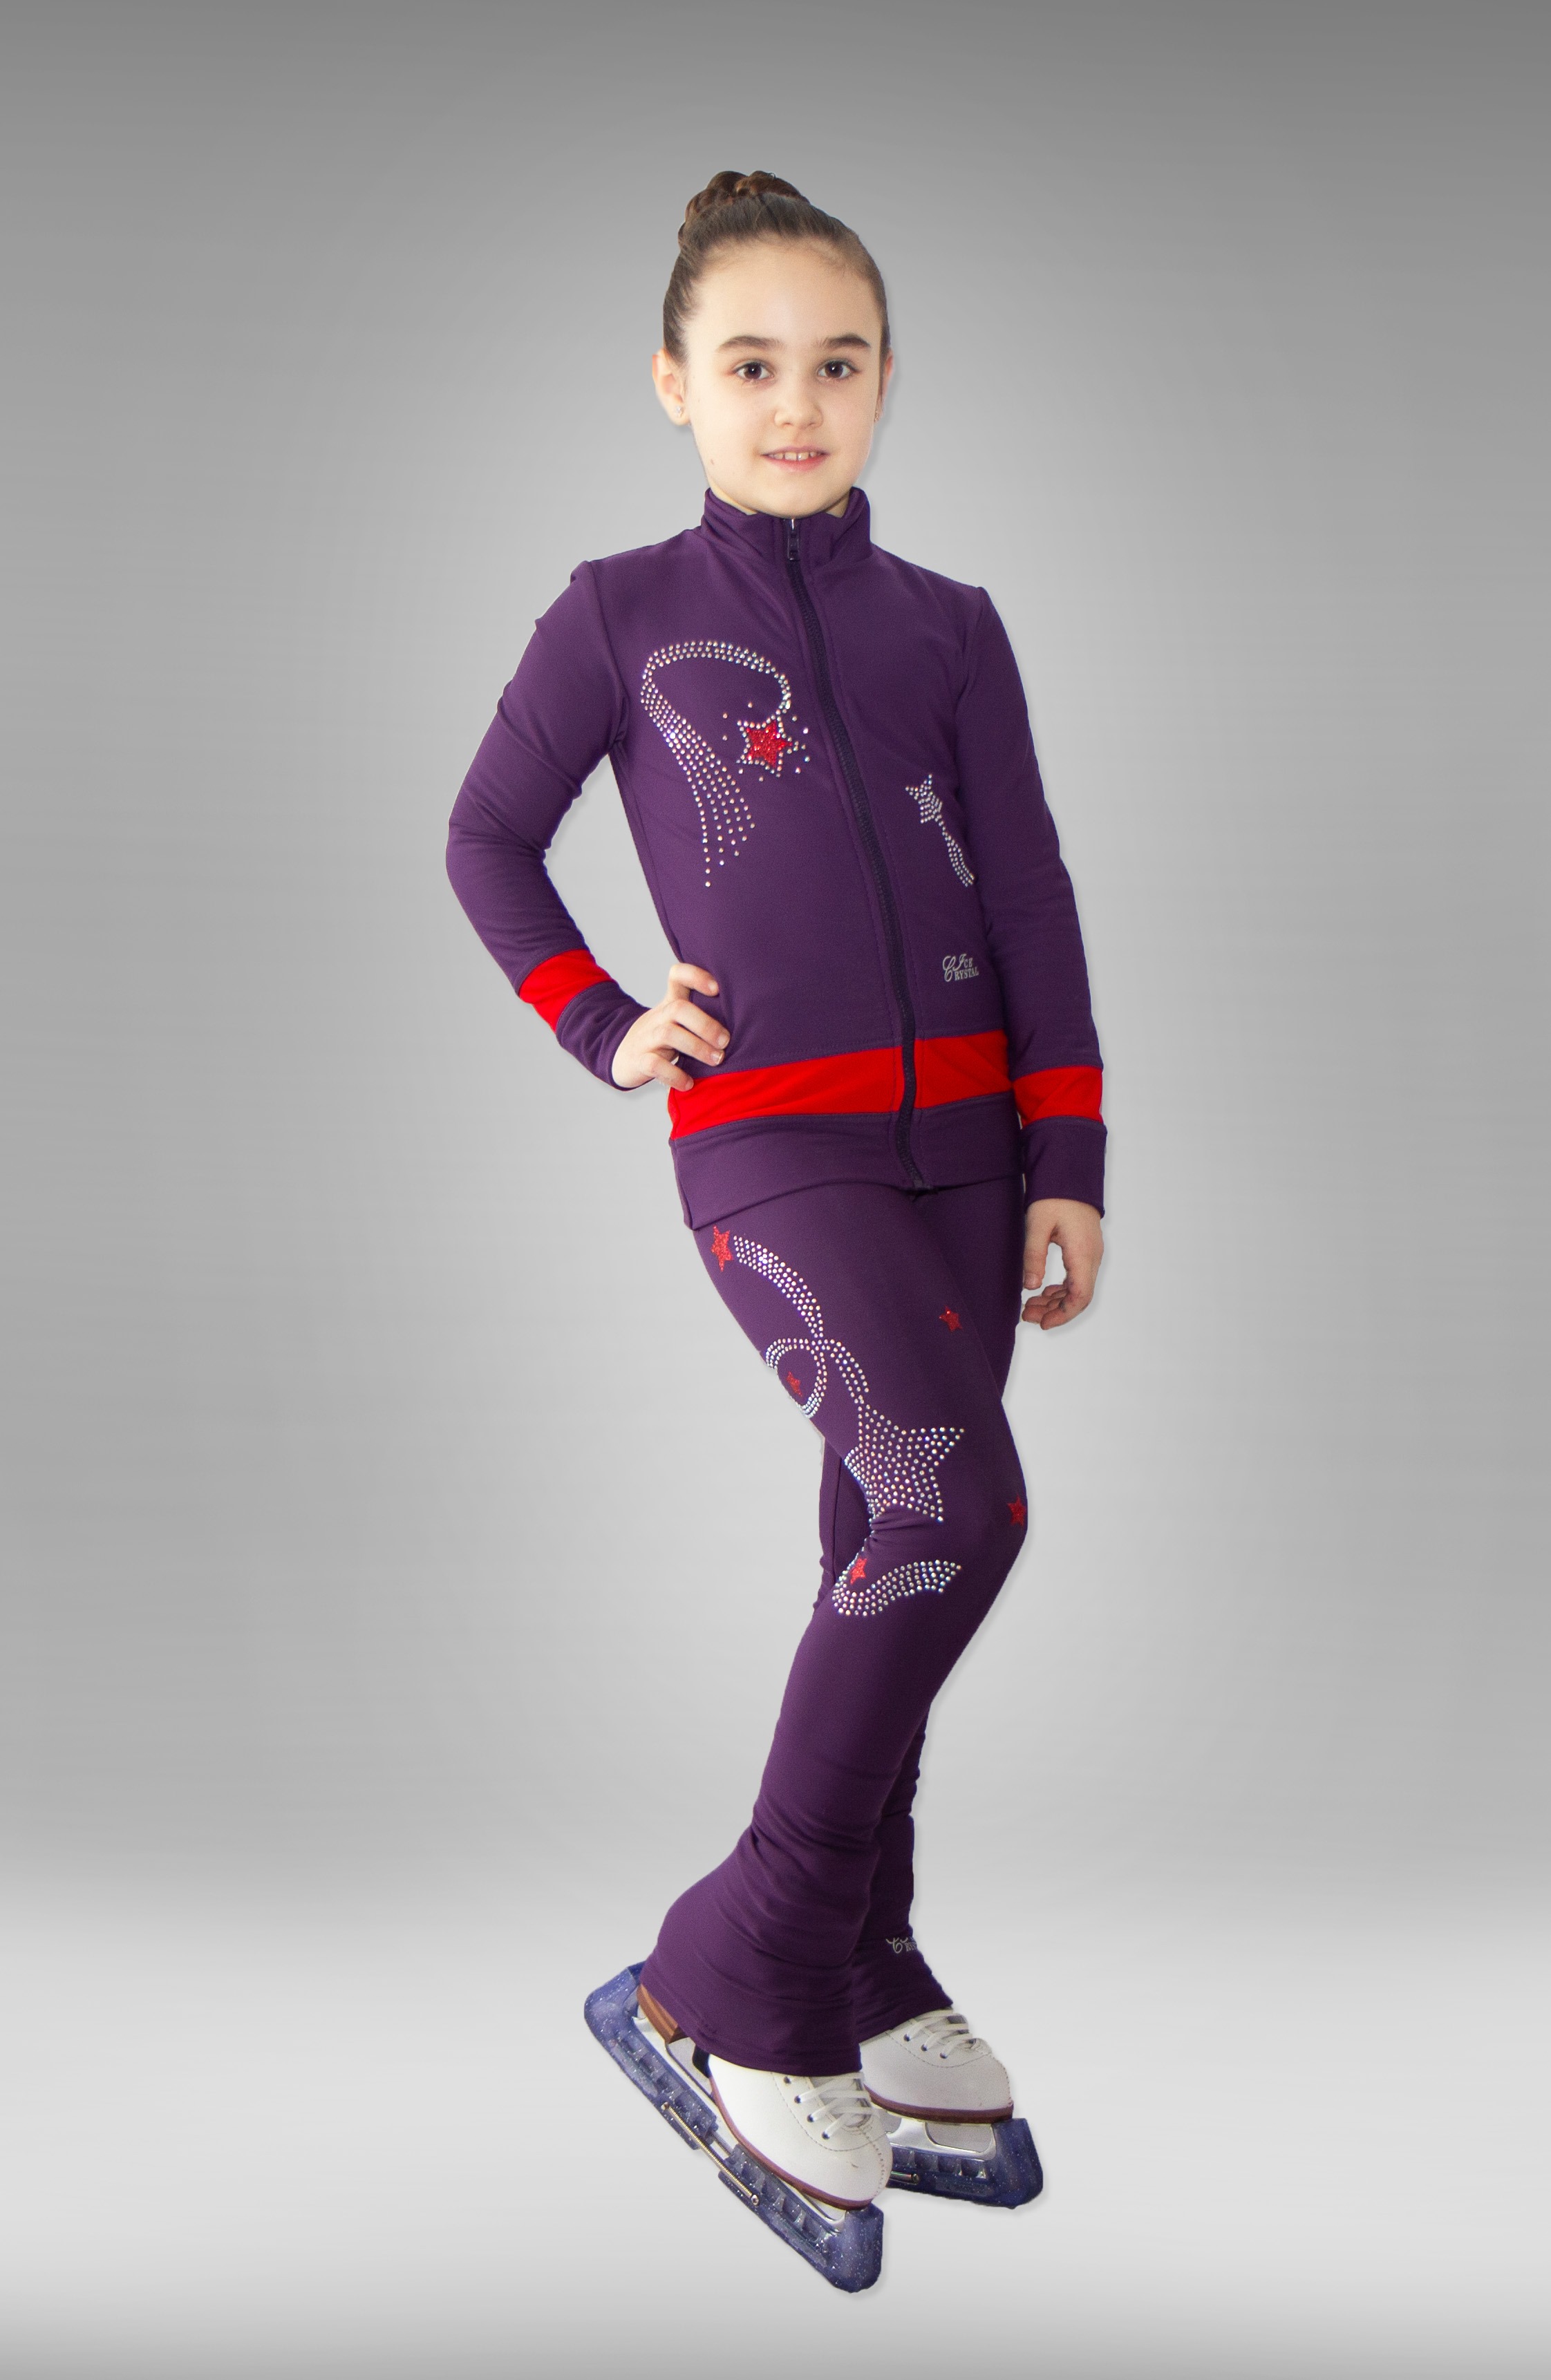 Термокомплект для фигурного катания "Star" фиолетово-красный